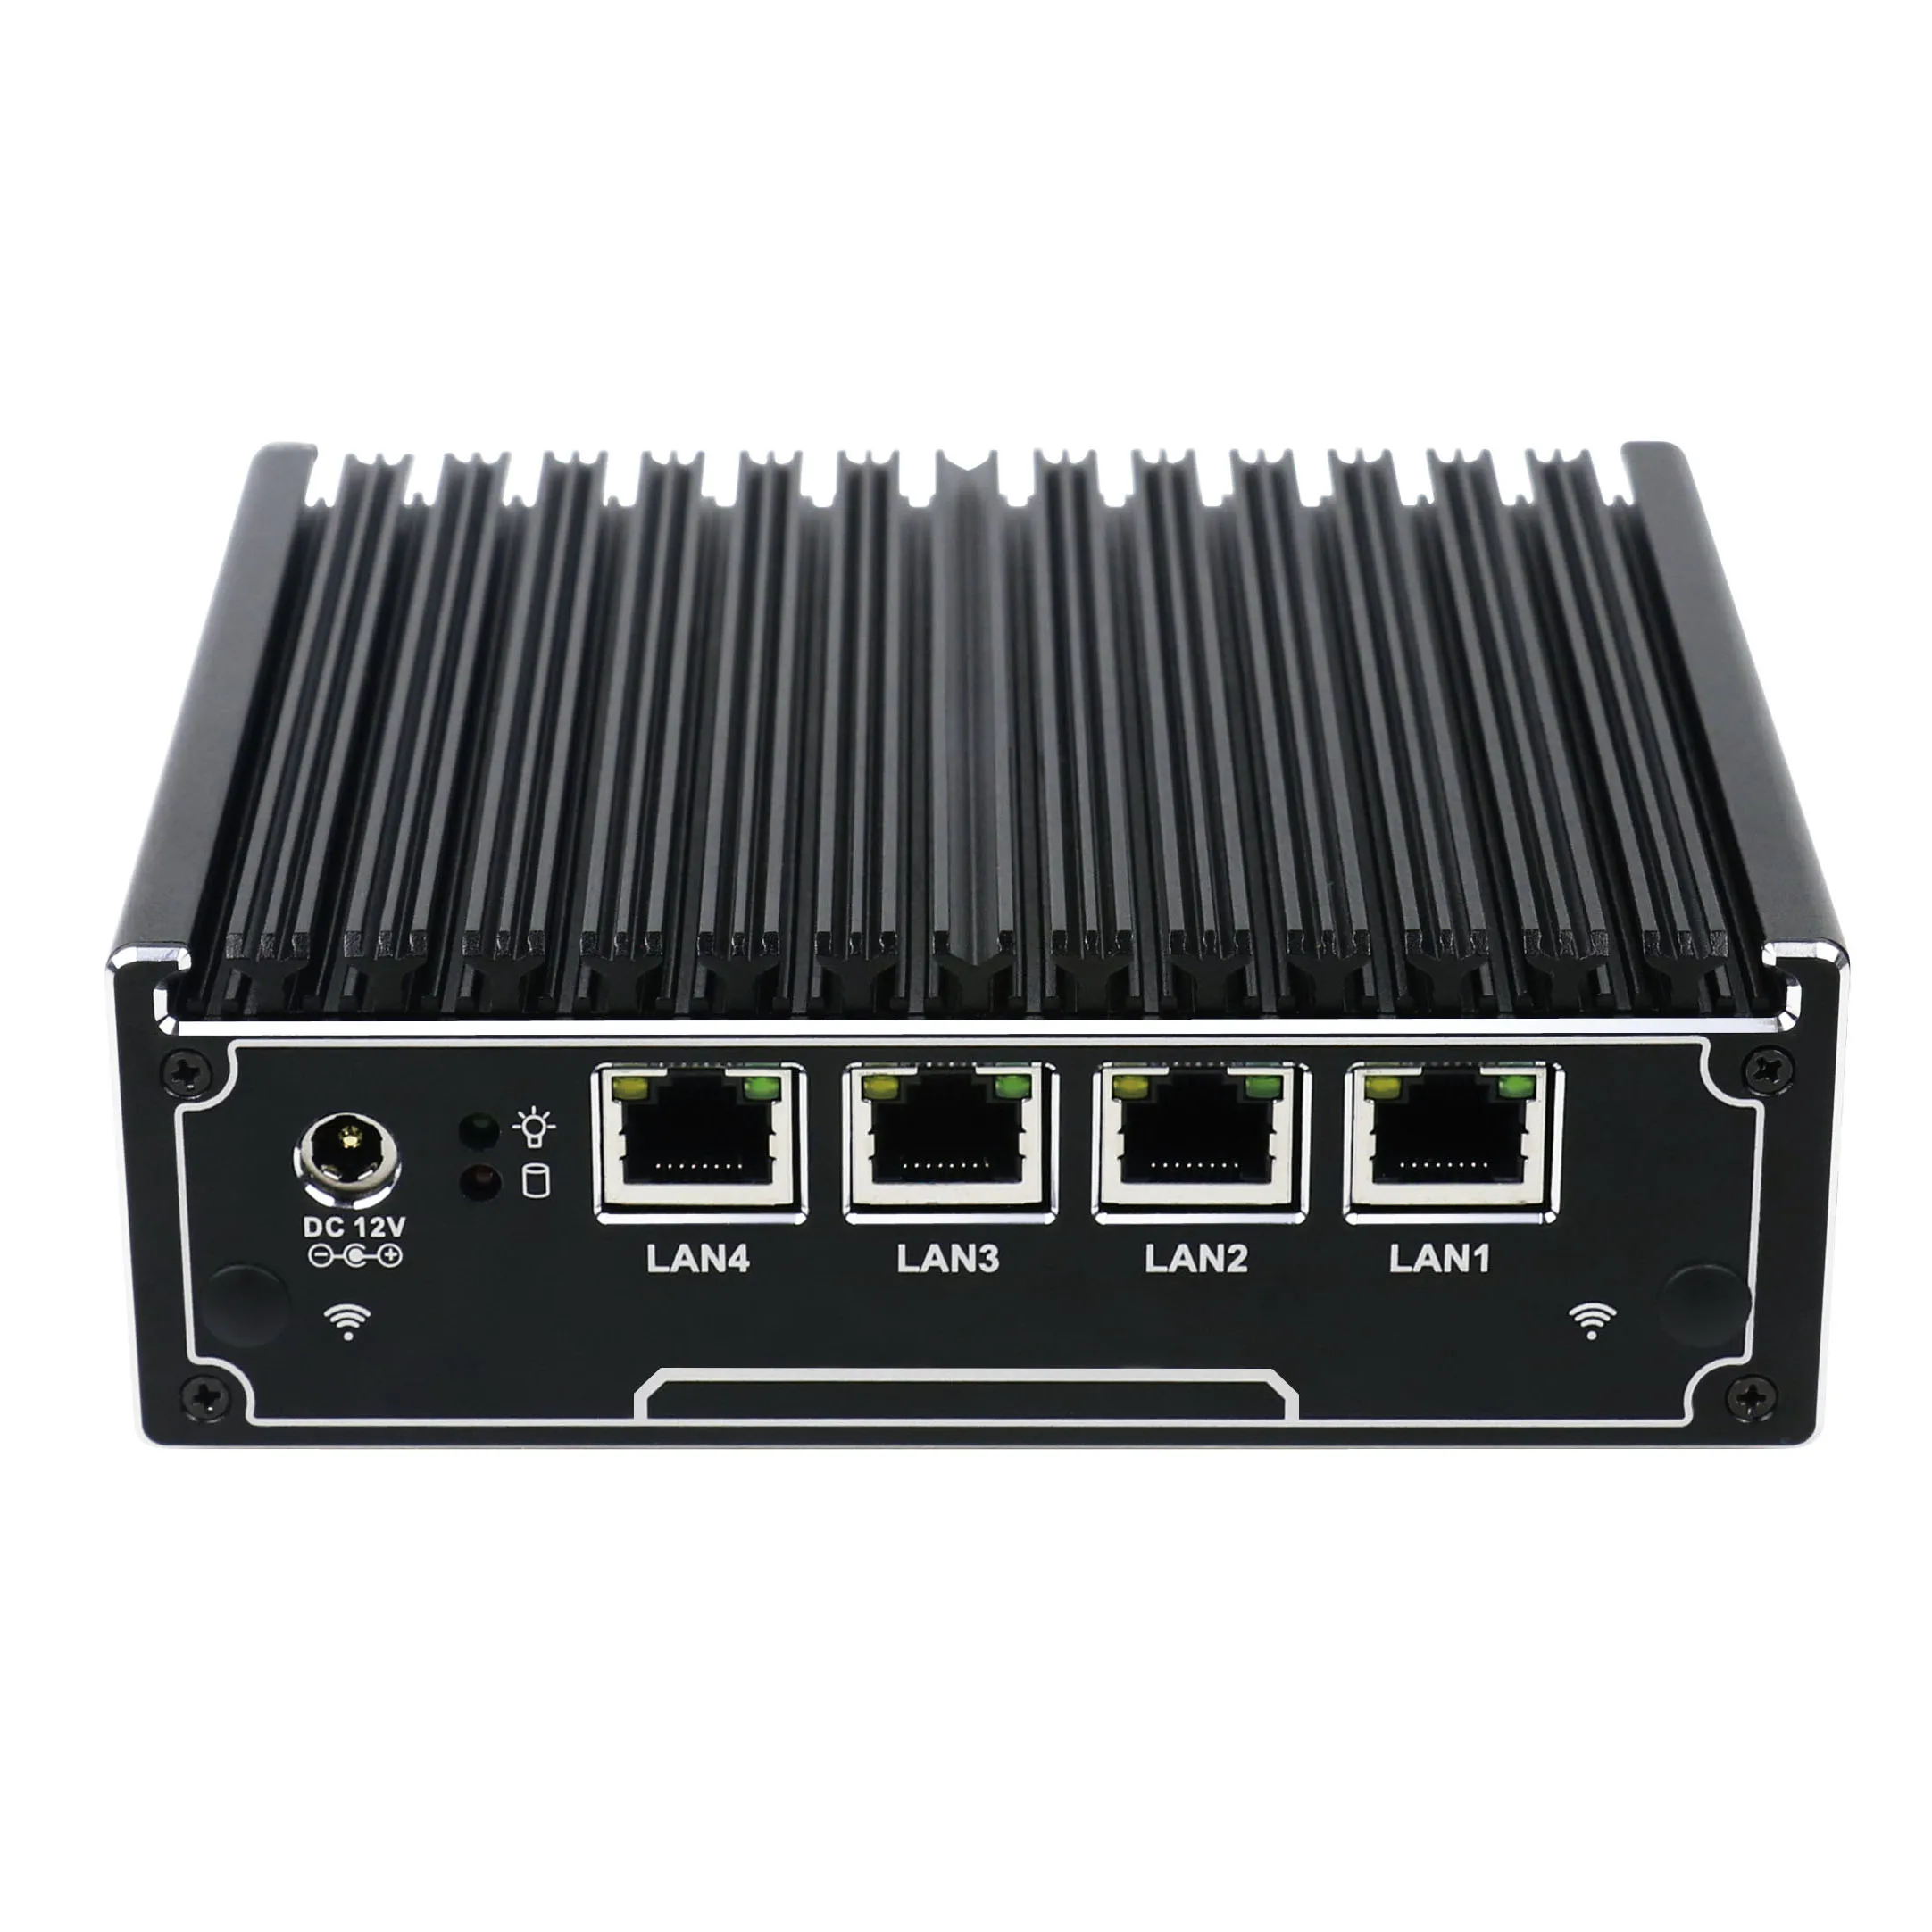 

Partaker 4 Ethernet RJ-45 Lan Ports Mini PC Celeron J1900 quad core 2.0GHz firewall router support 2.5'' HDD/SSD pfsense